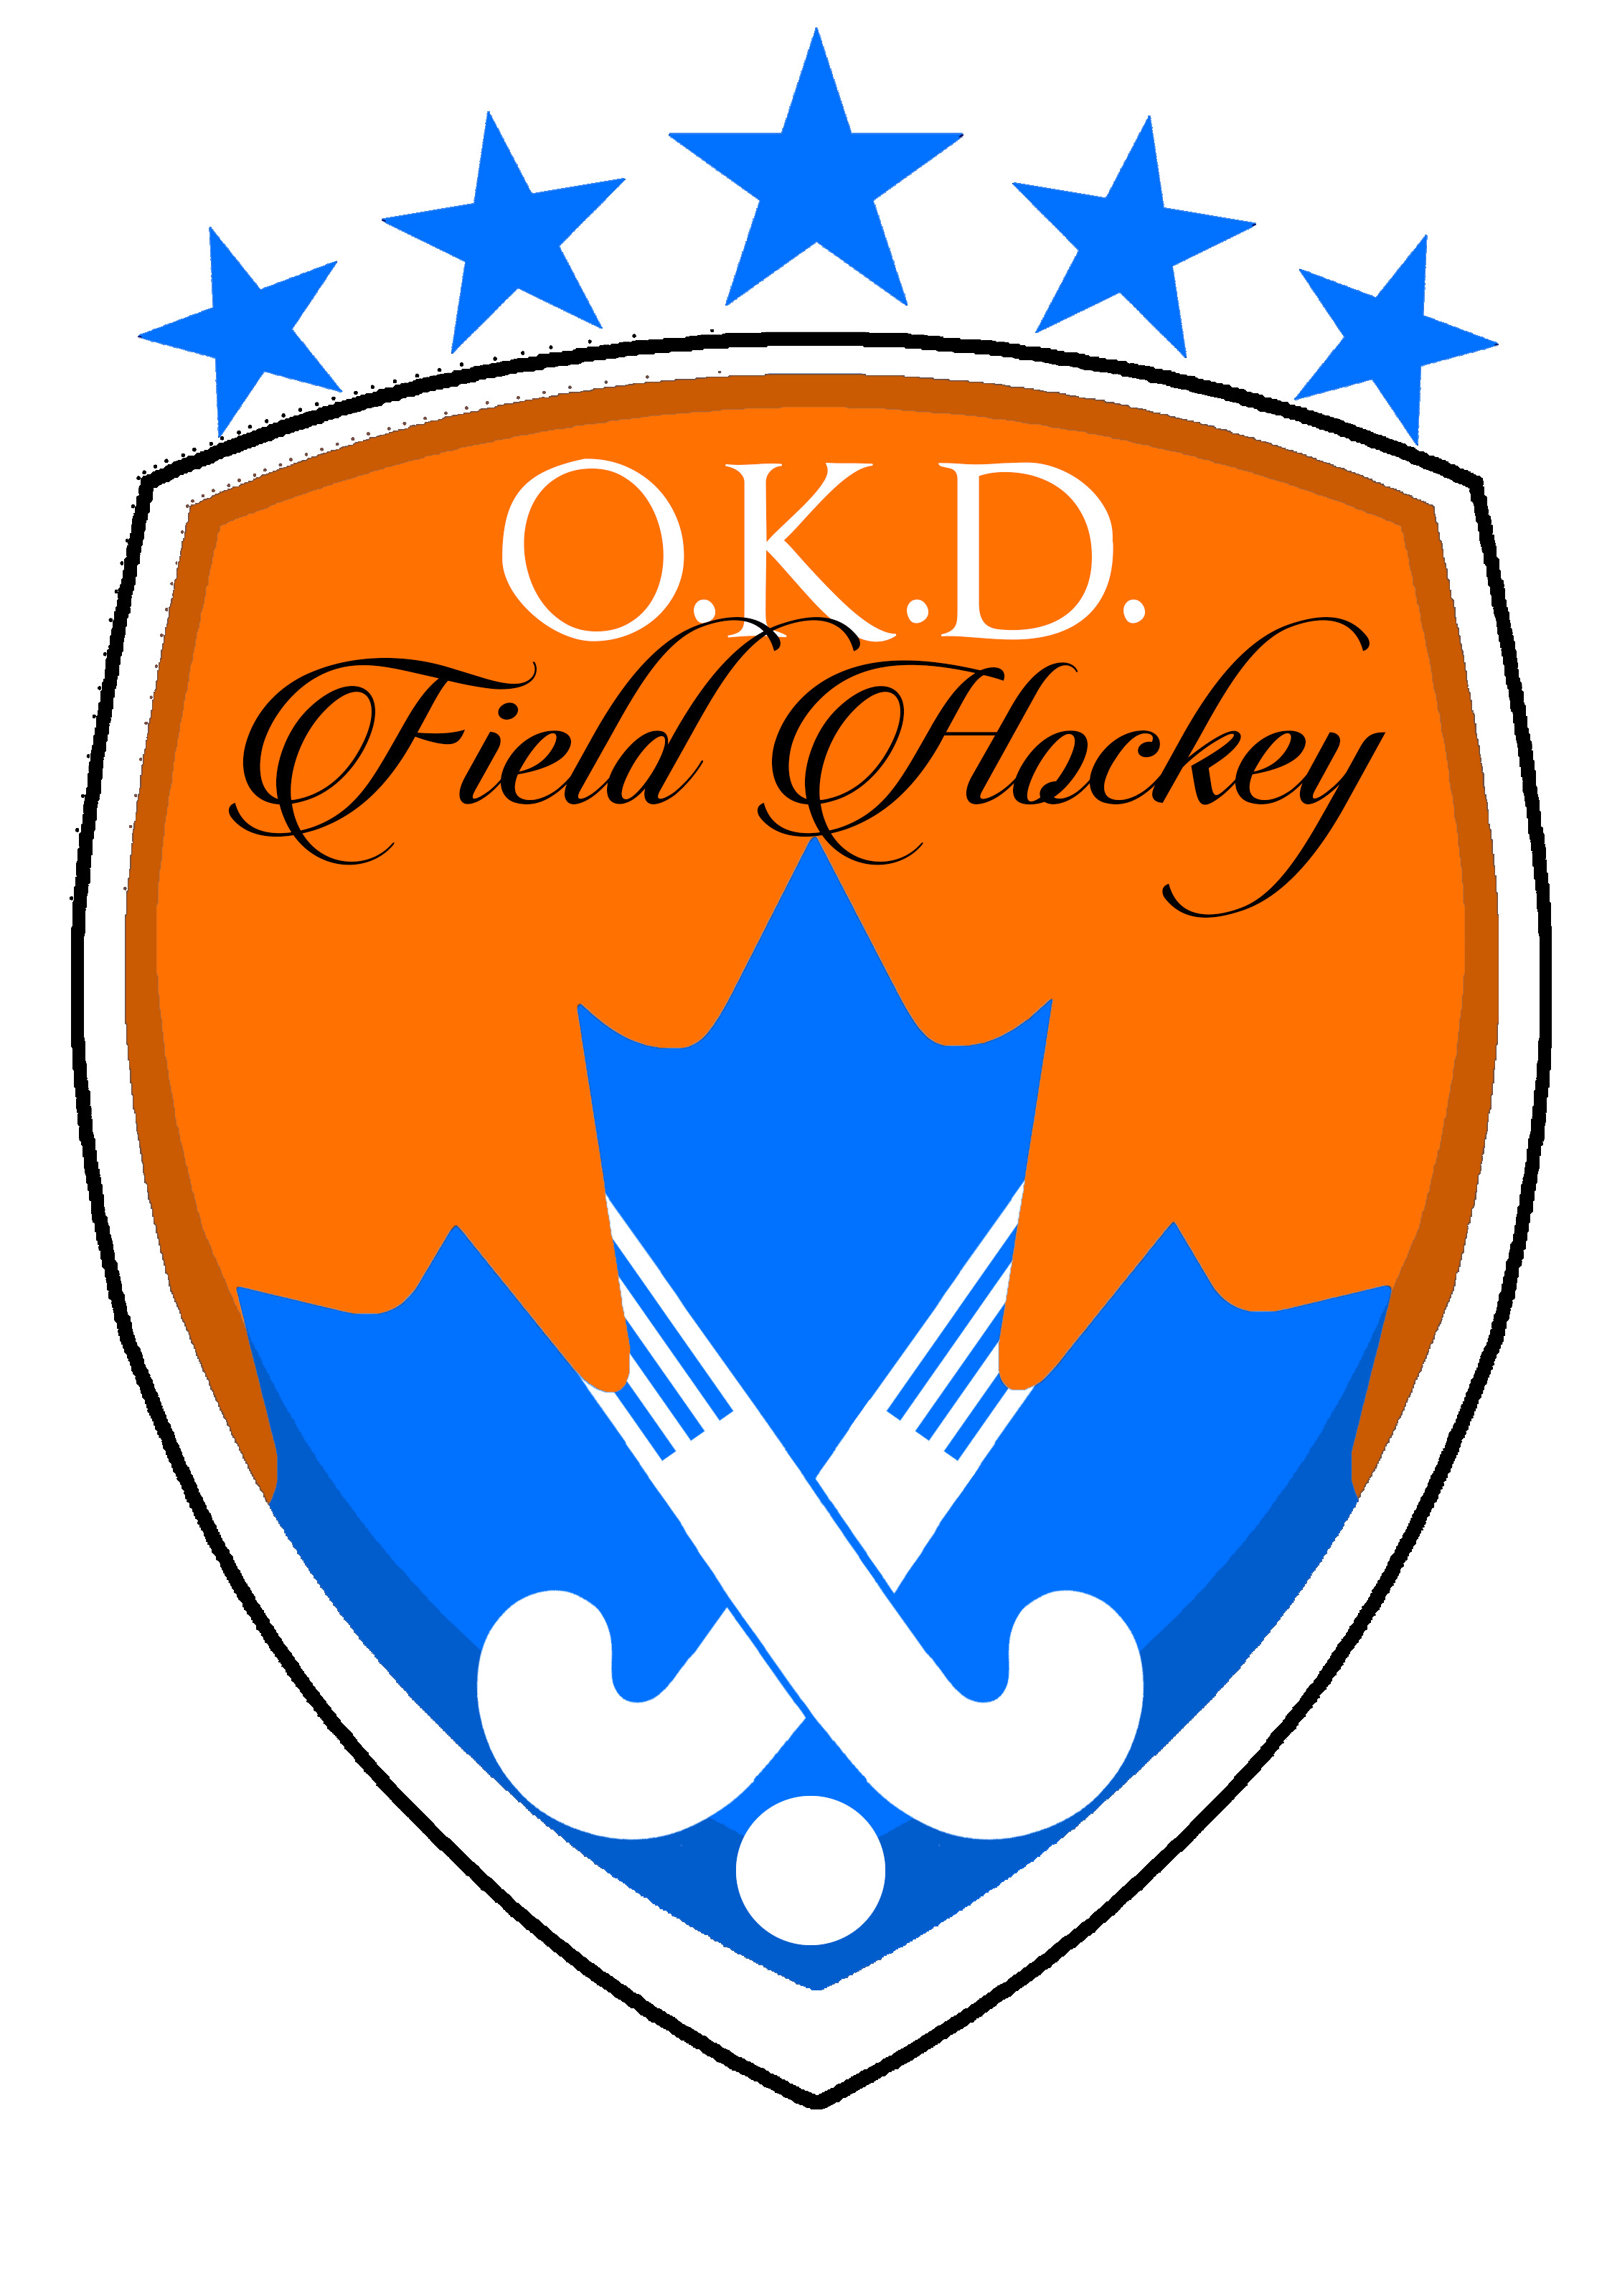 OKD Field Hockey Logo icons